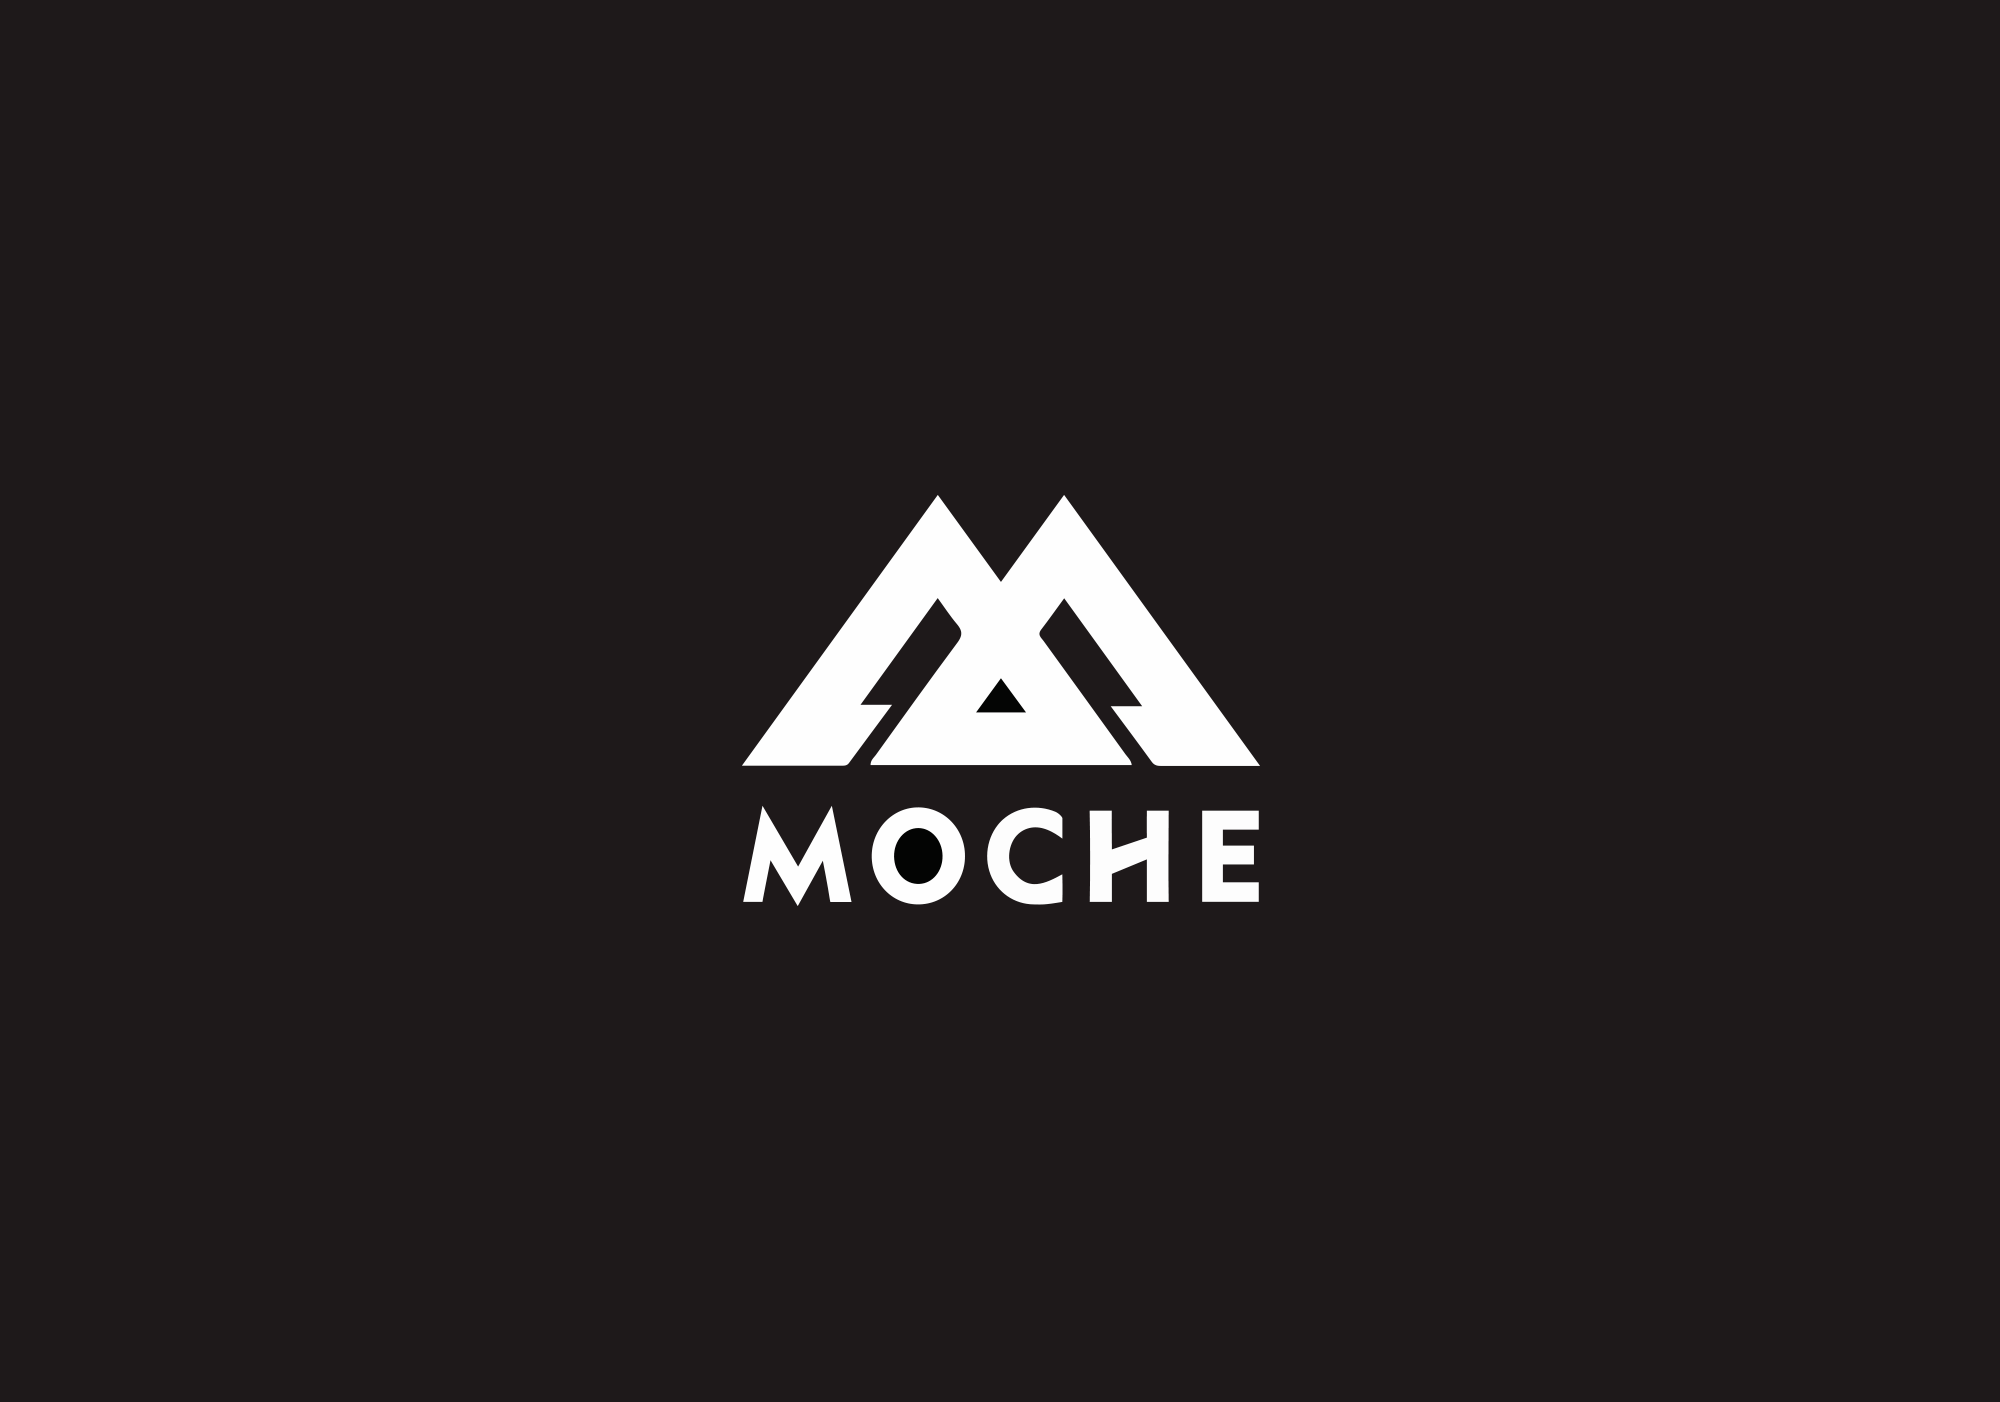 Moche_02